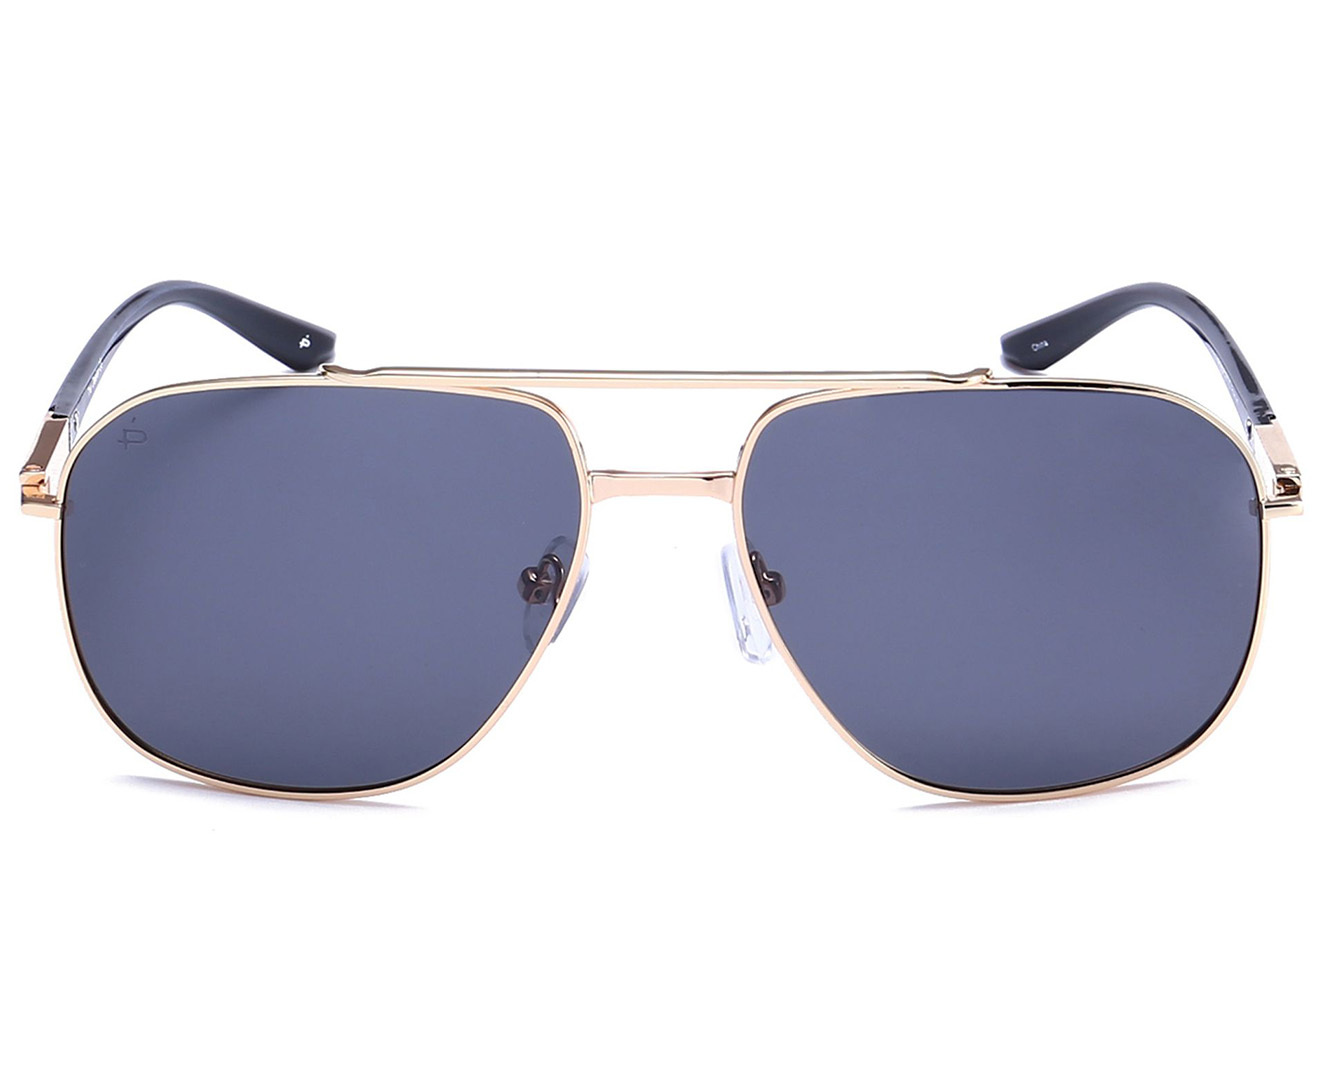 Privé Revaux The Dealer Polarised Sunglasses - Gold | Catch.co.nz